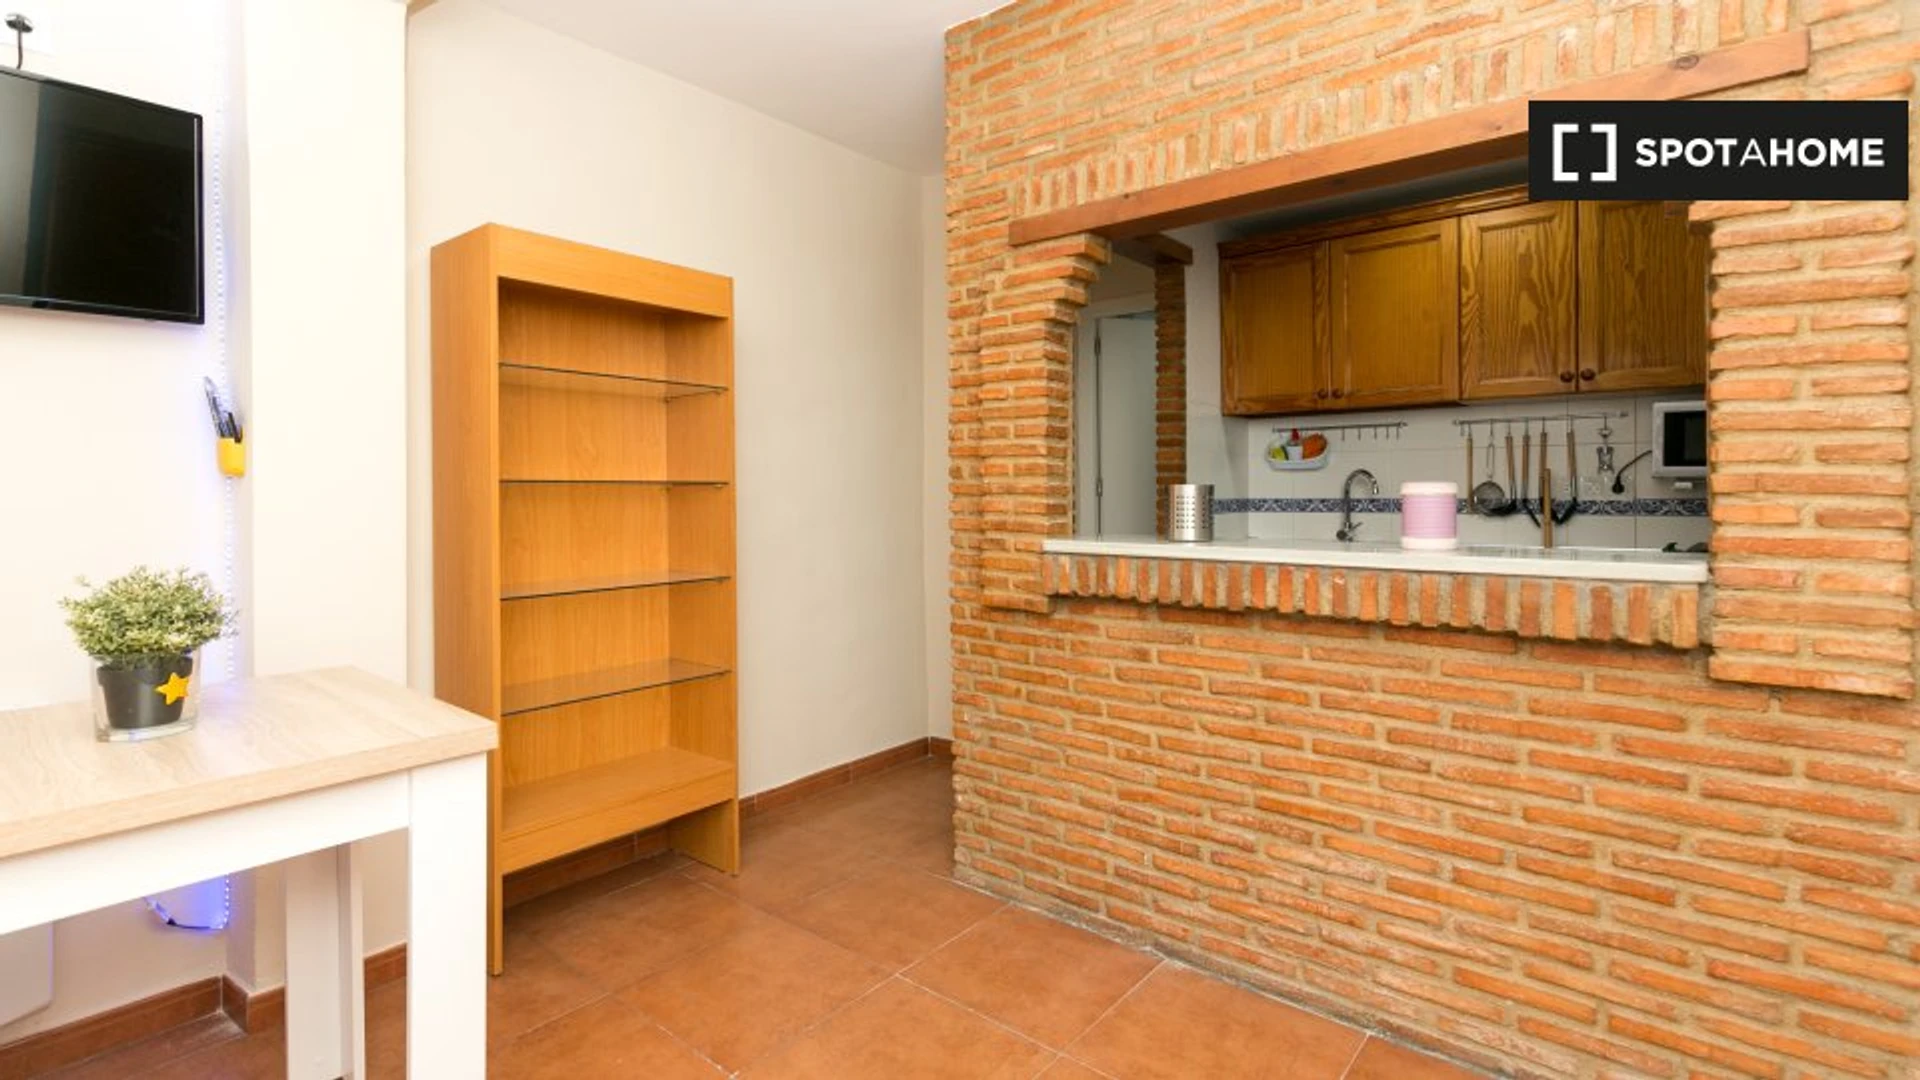 Pokój do wynajęcia we wspólnym mieszkaniu w Granada